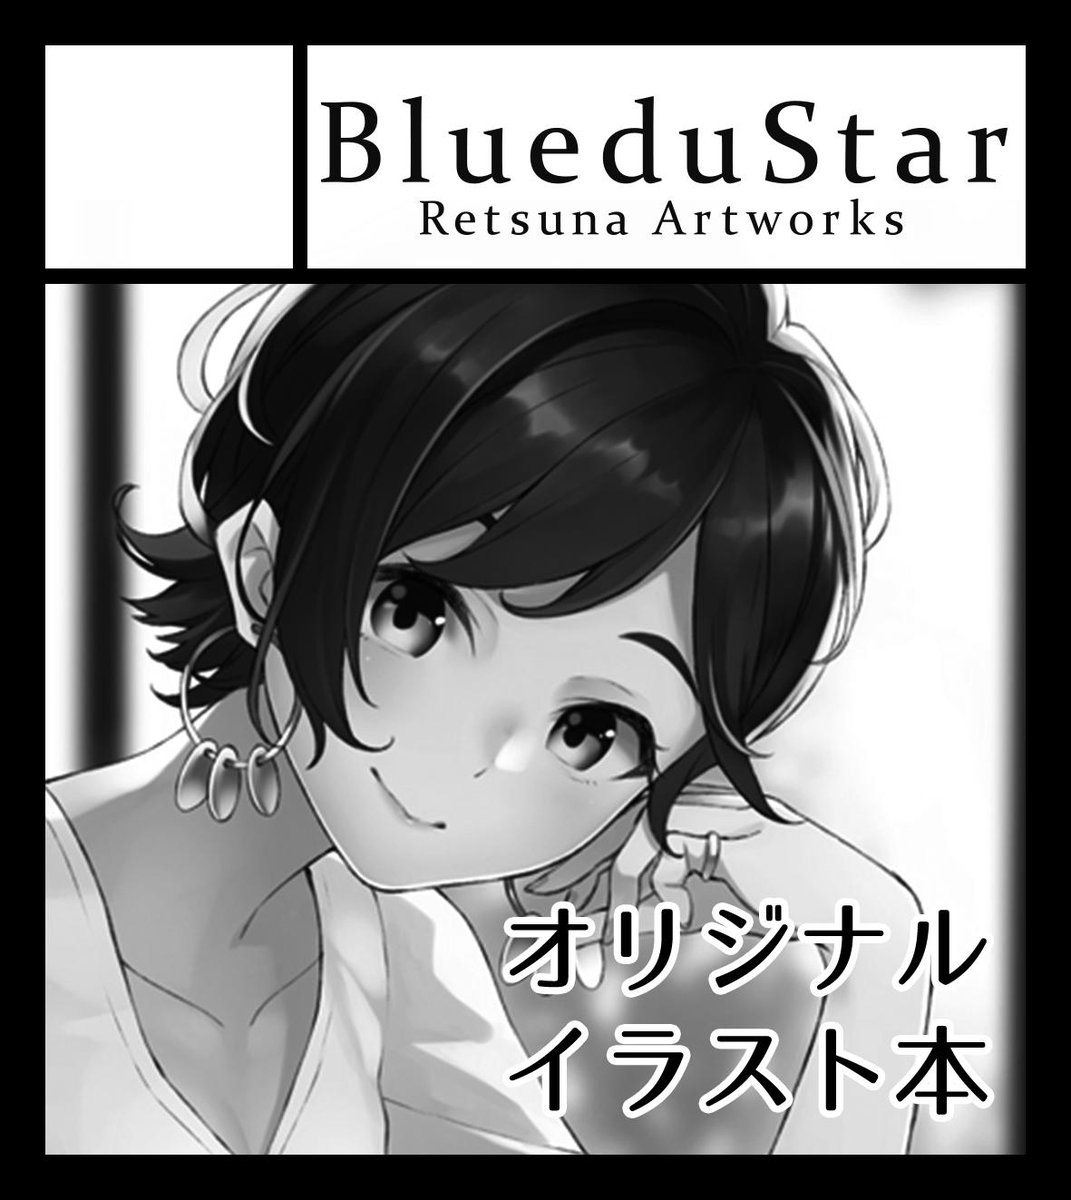 2019年12月1日に西日本総合展示場 本館で開催予定のイベント「九州COMITIA3」へサークル「BlueduStar」で申し込みました。 